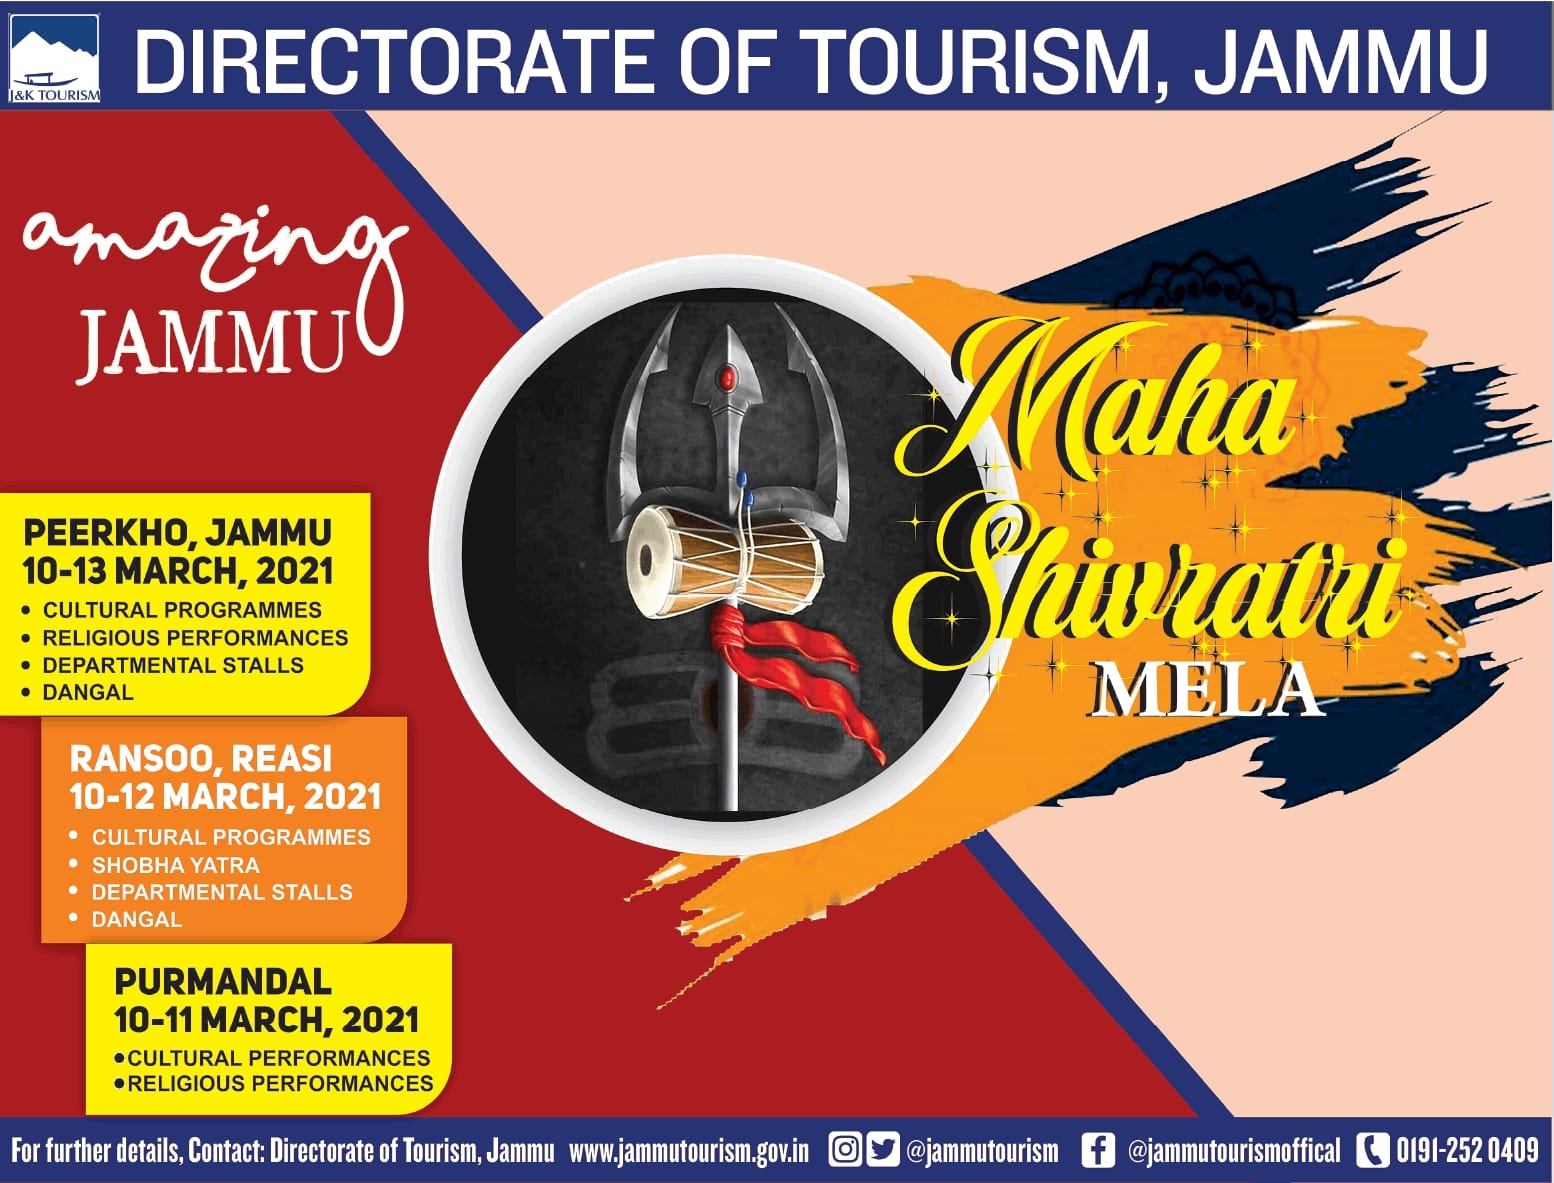 directorate-of-tourism-jammu-maha-shivratri-mela-ad-times-of-india-mumbai-07-03-2021